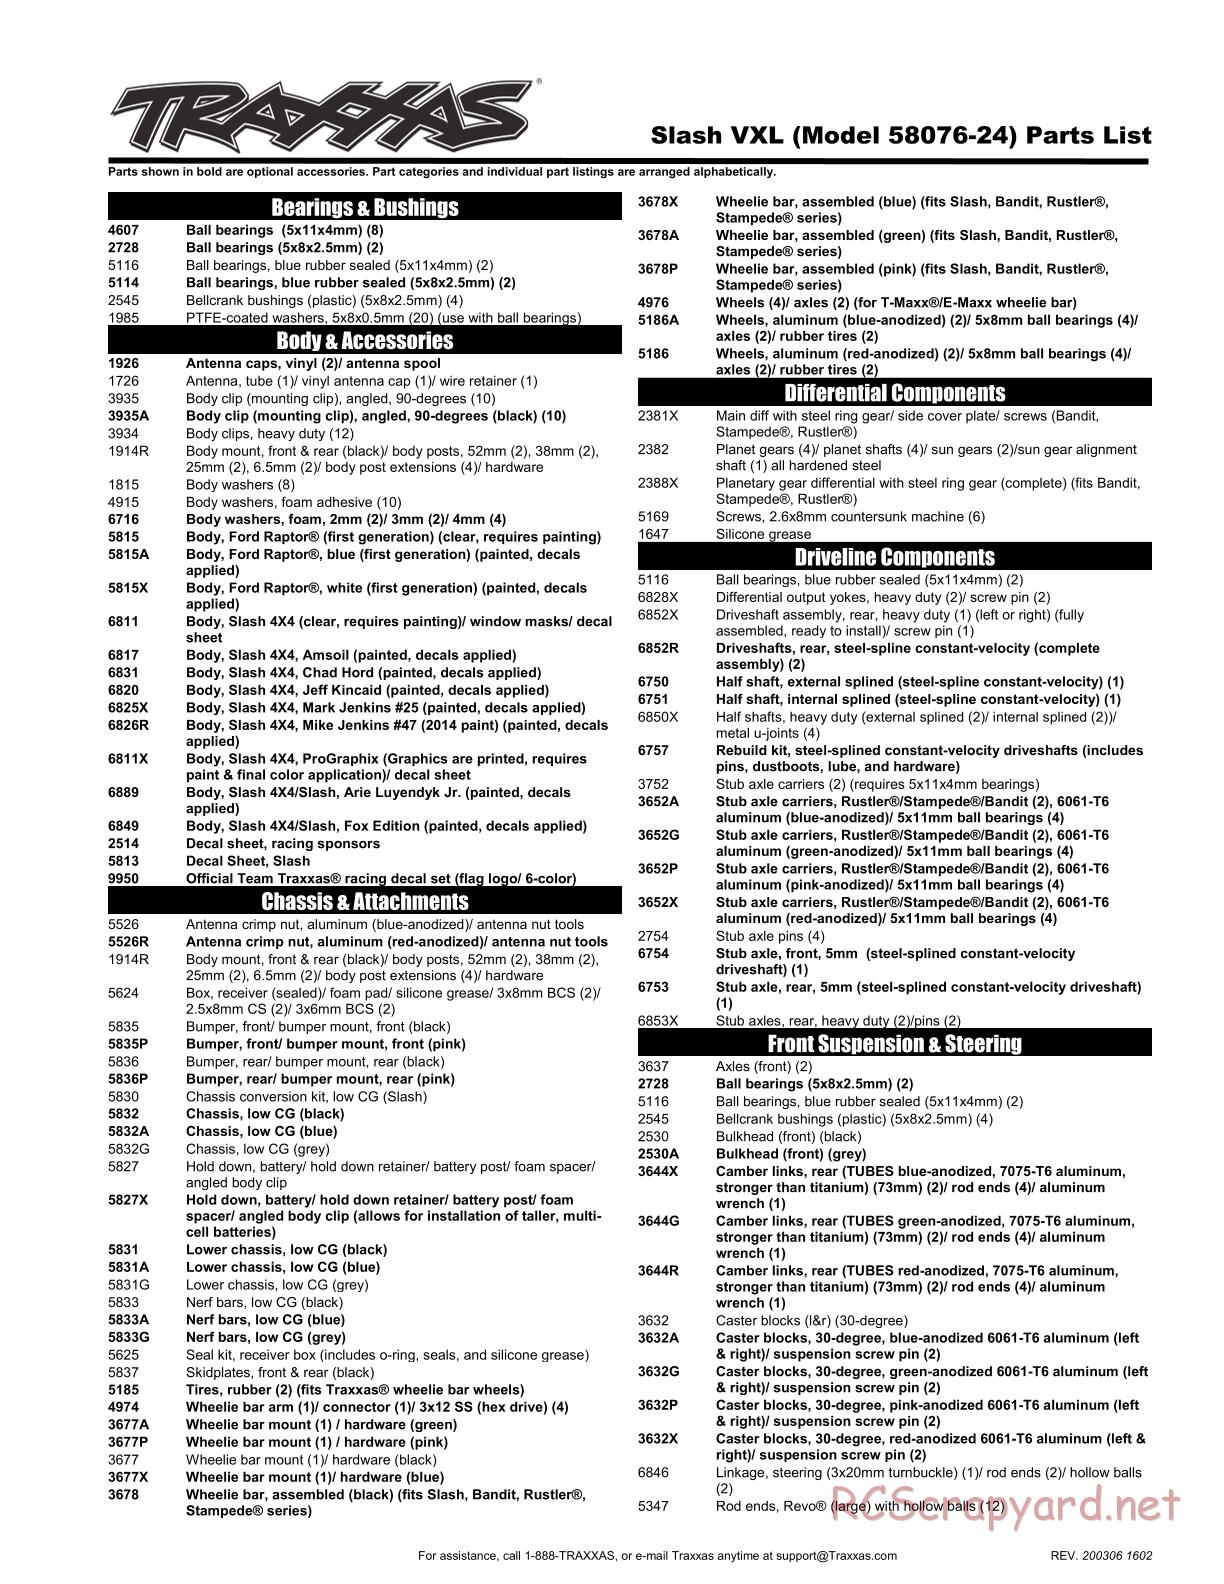 Traxxas - Slash 2WD VXL TSM OBA (2017) - Parts List - Page 1